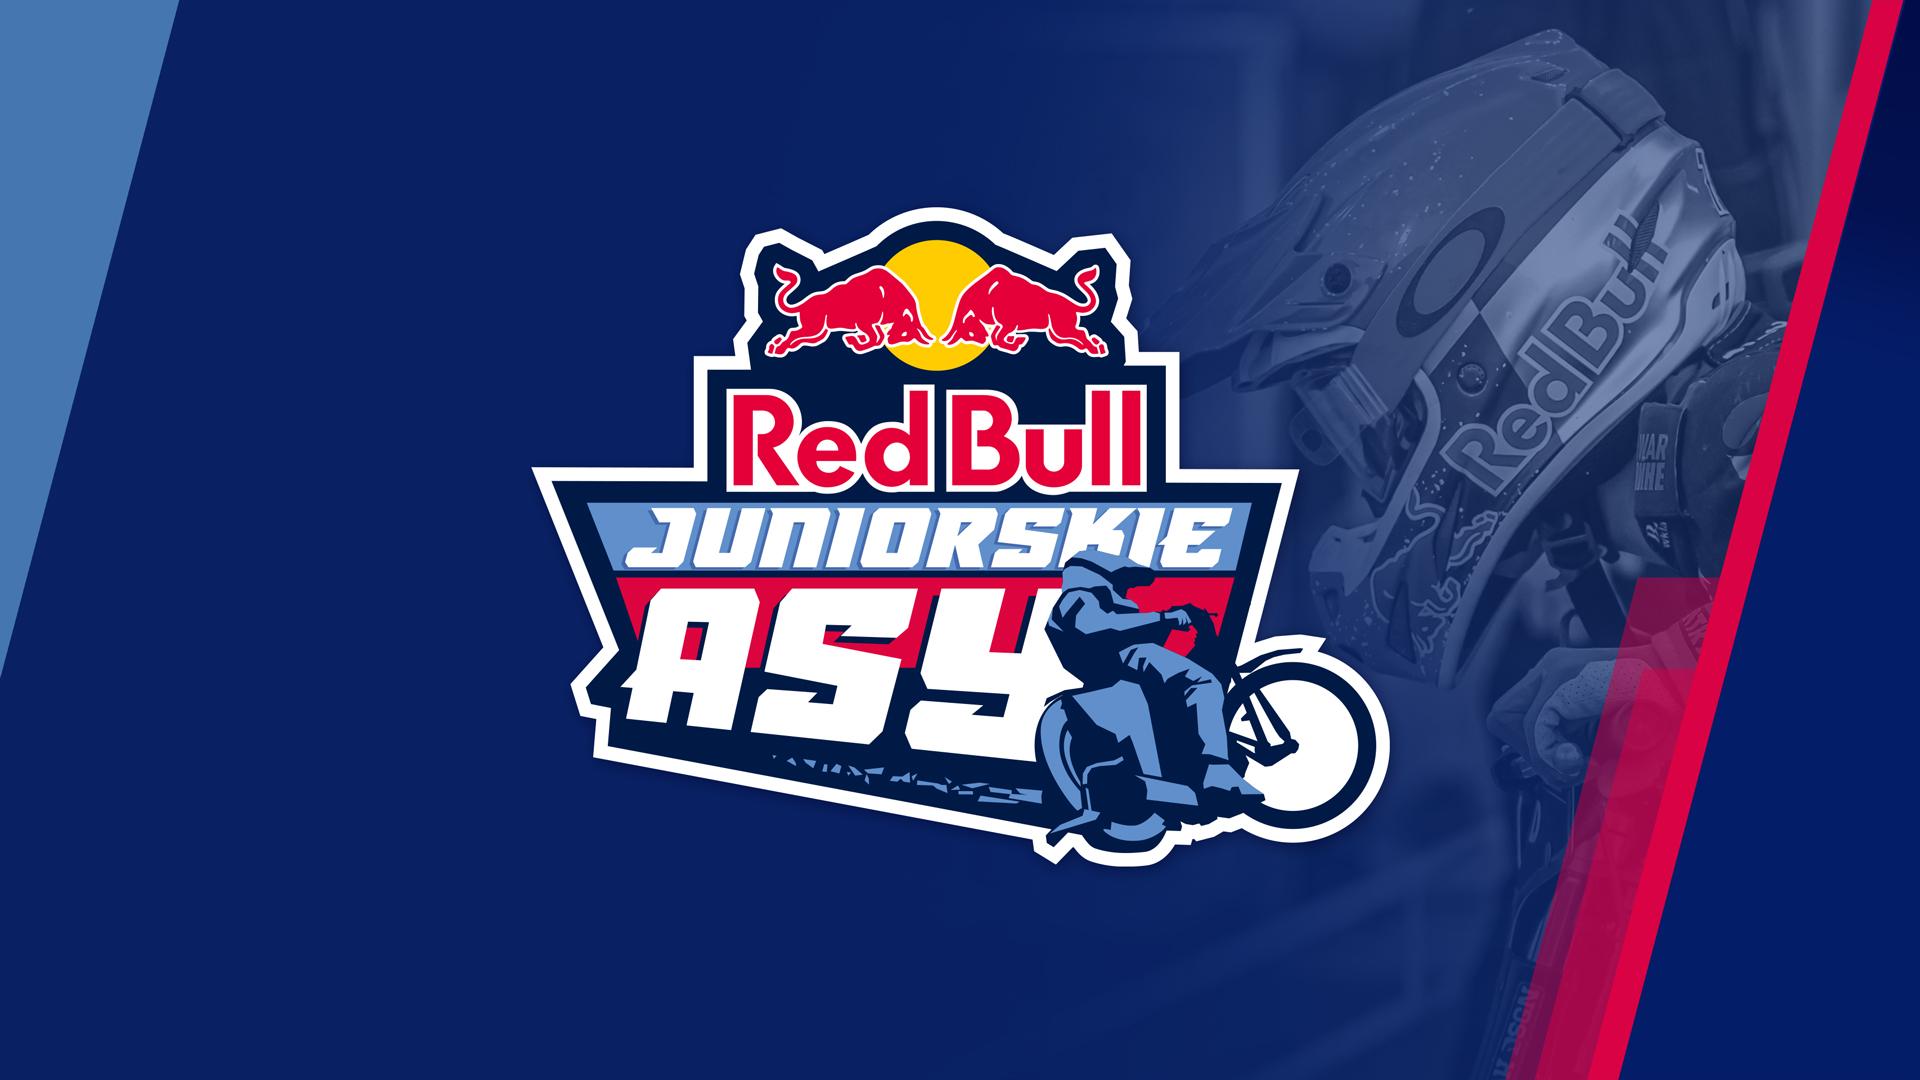 Juniorzy Meczu (Red Bull Juniorskie Asy): status quo w czołówce